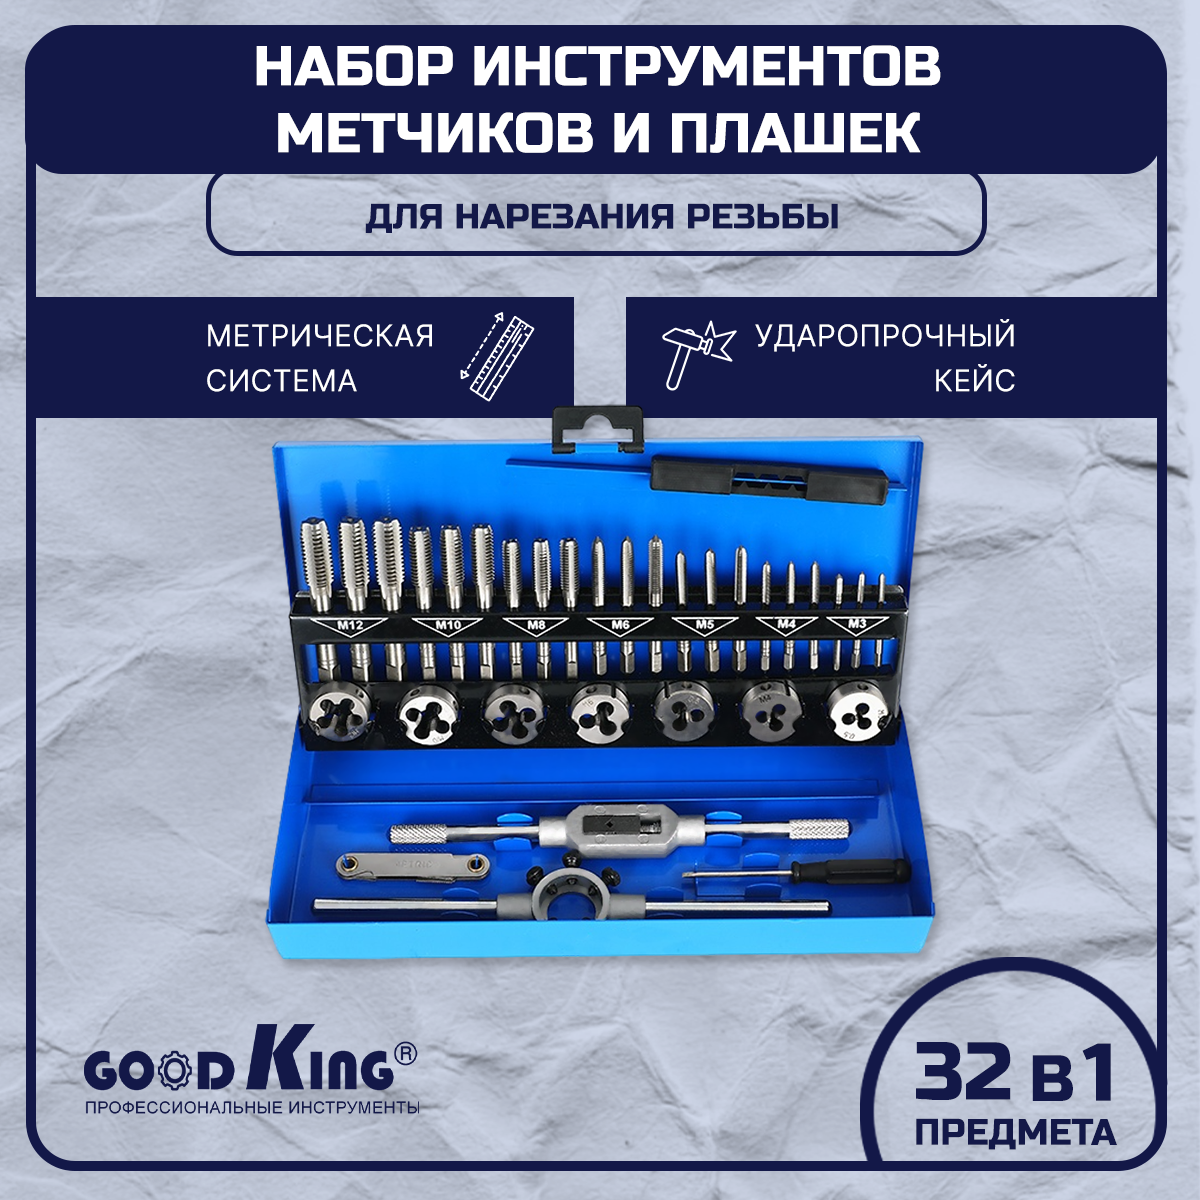 Набор плашек и метчиков 32 предмета GOODKING PM-10032 метчики для нарезания резьбы метчики для нарезания набор инструментов